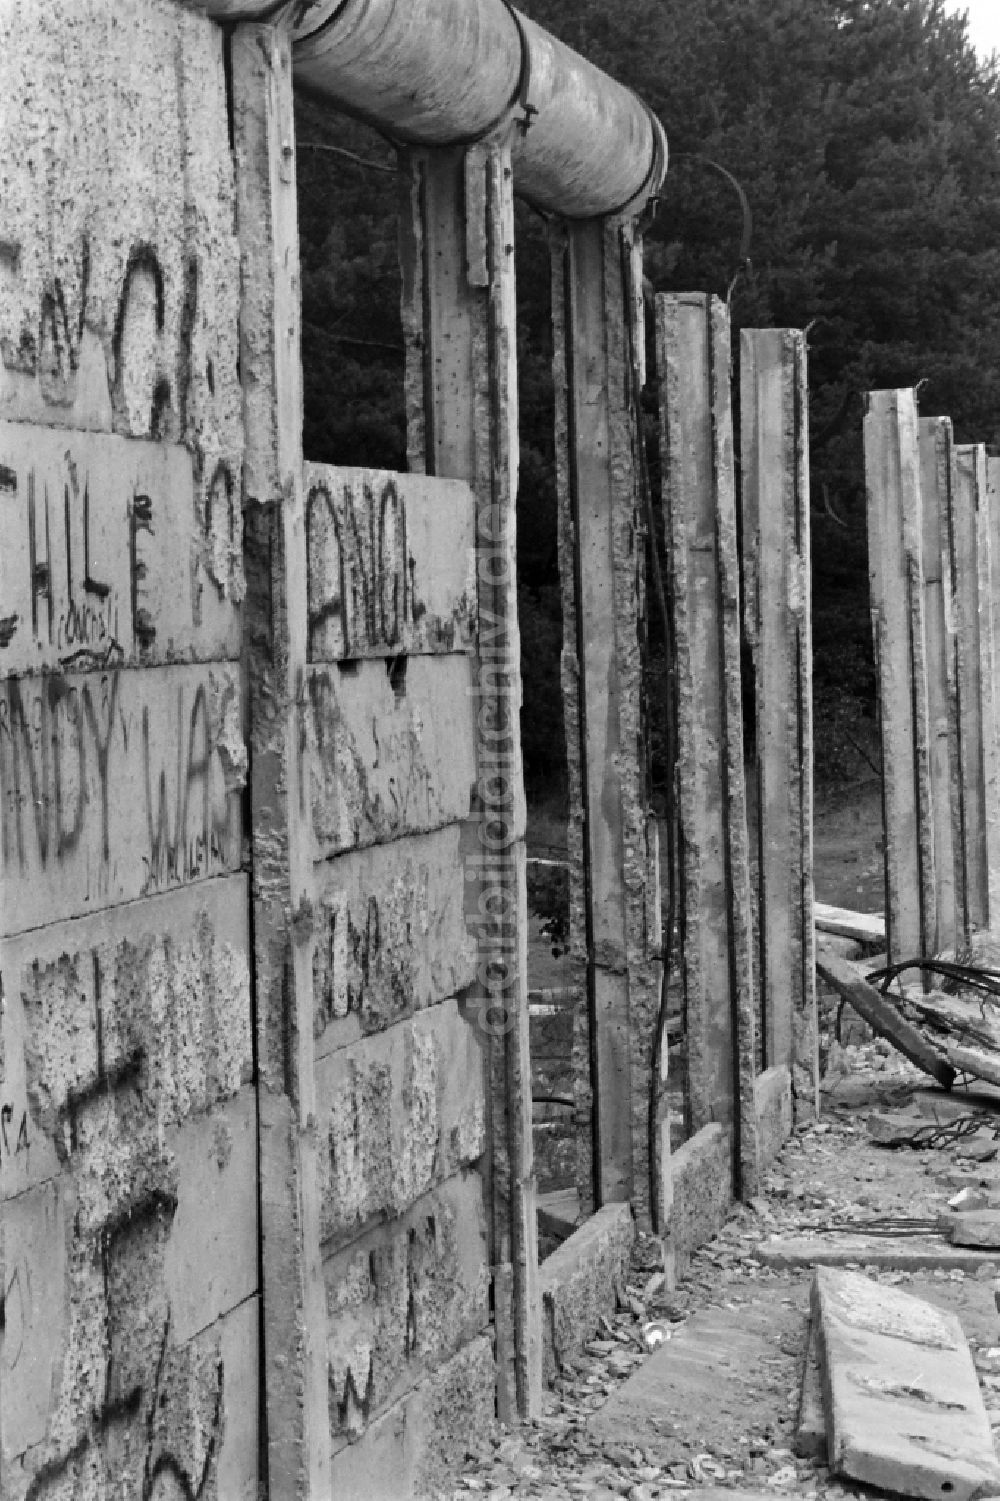 DDR-Bildarchiv: Berlin - Fragmente der verfallenden Grenzbefestigung und Mauer in Berlin auf dem Gebiet der ehemaligen DDR, Deutsche Demokratische Republik